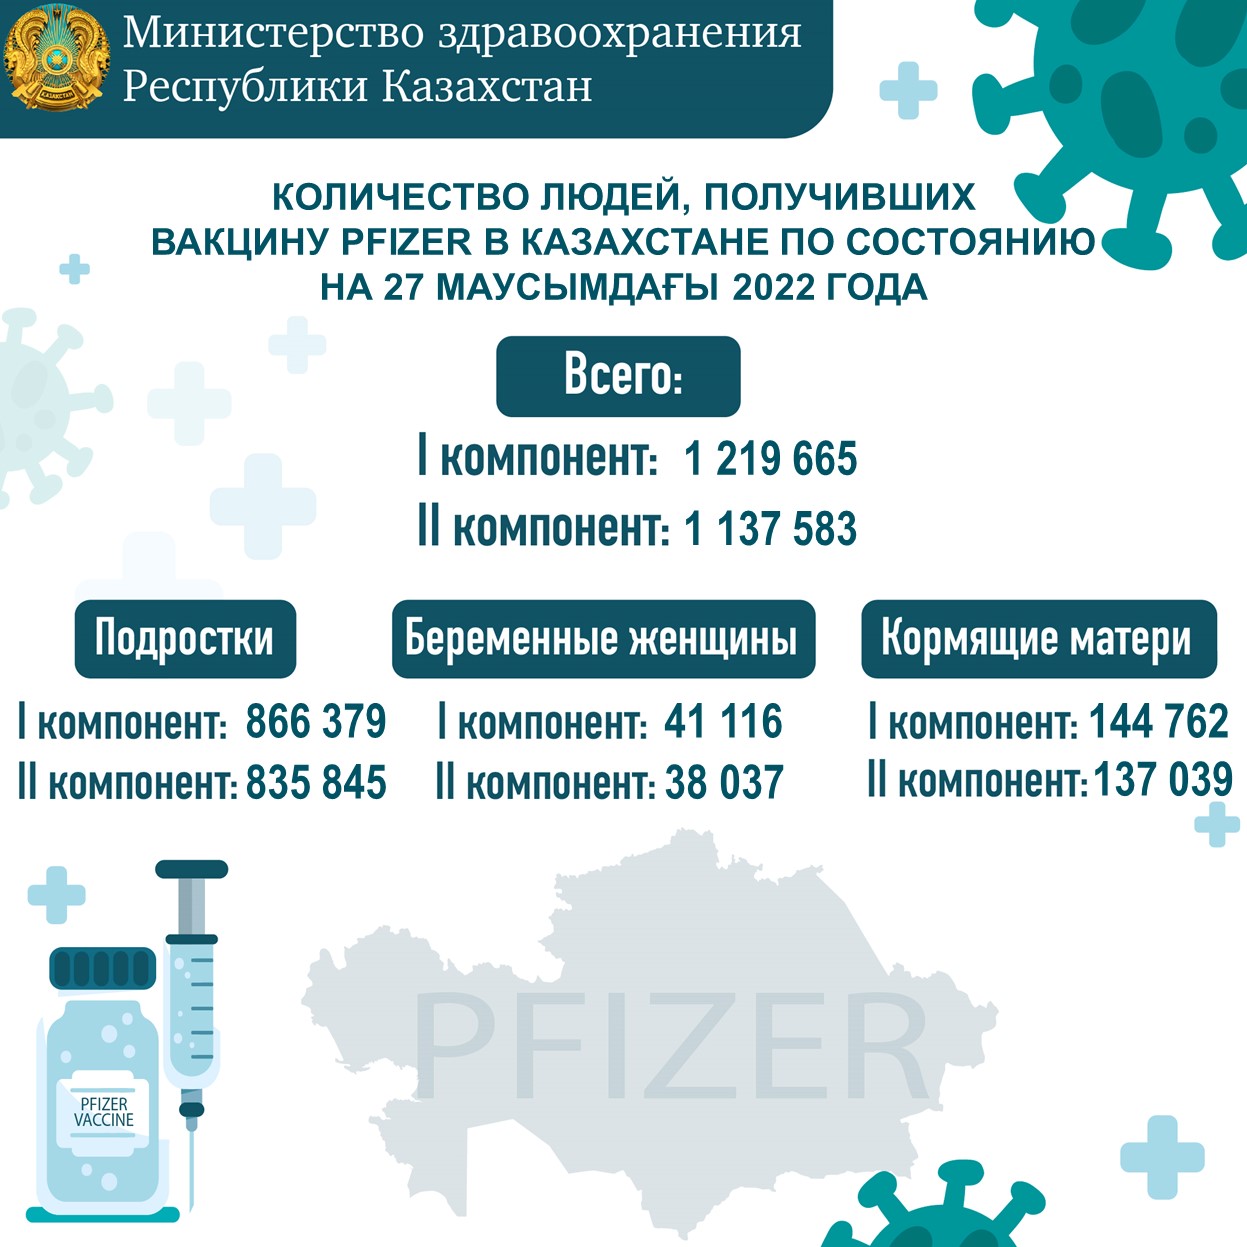 Количество людей, получивших вакцину Рfizer в Казахстане по состоянию на 27 июня 2022 года